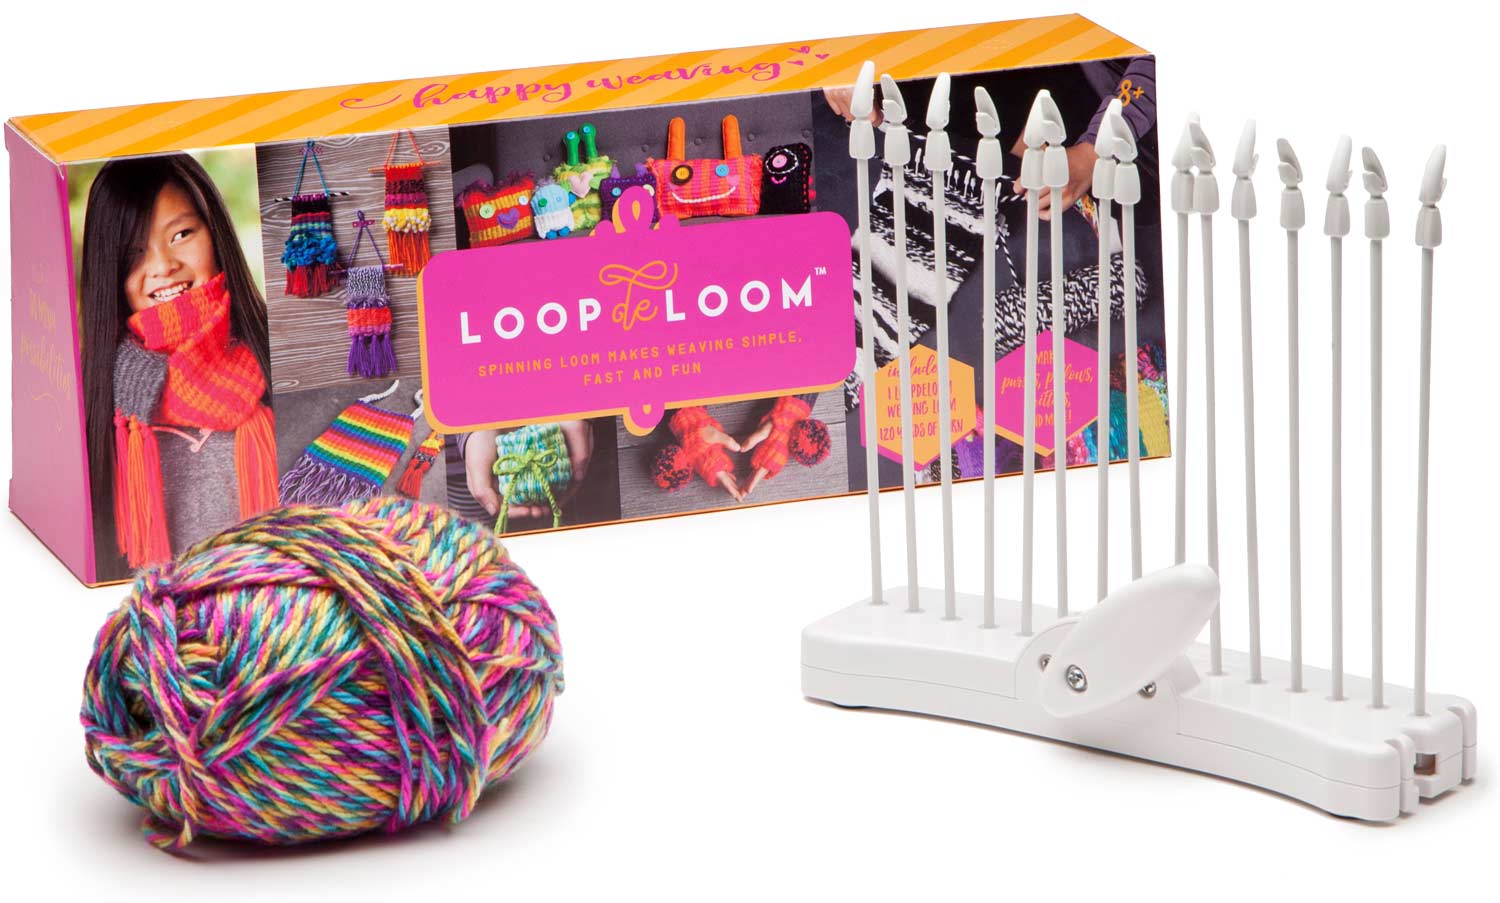 Loopdeloom LWE31 ANN Williams Group Weaving Loom Kit Spinning Multicolor 